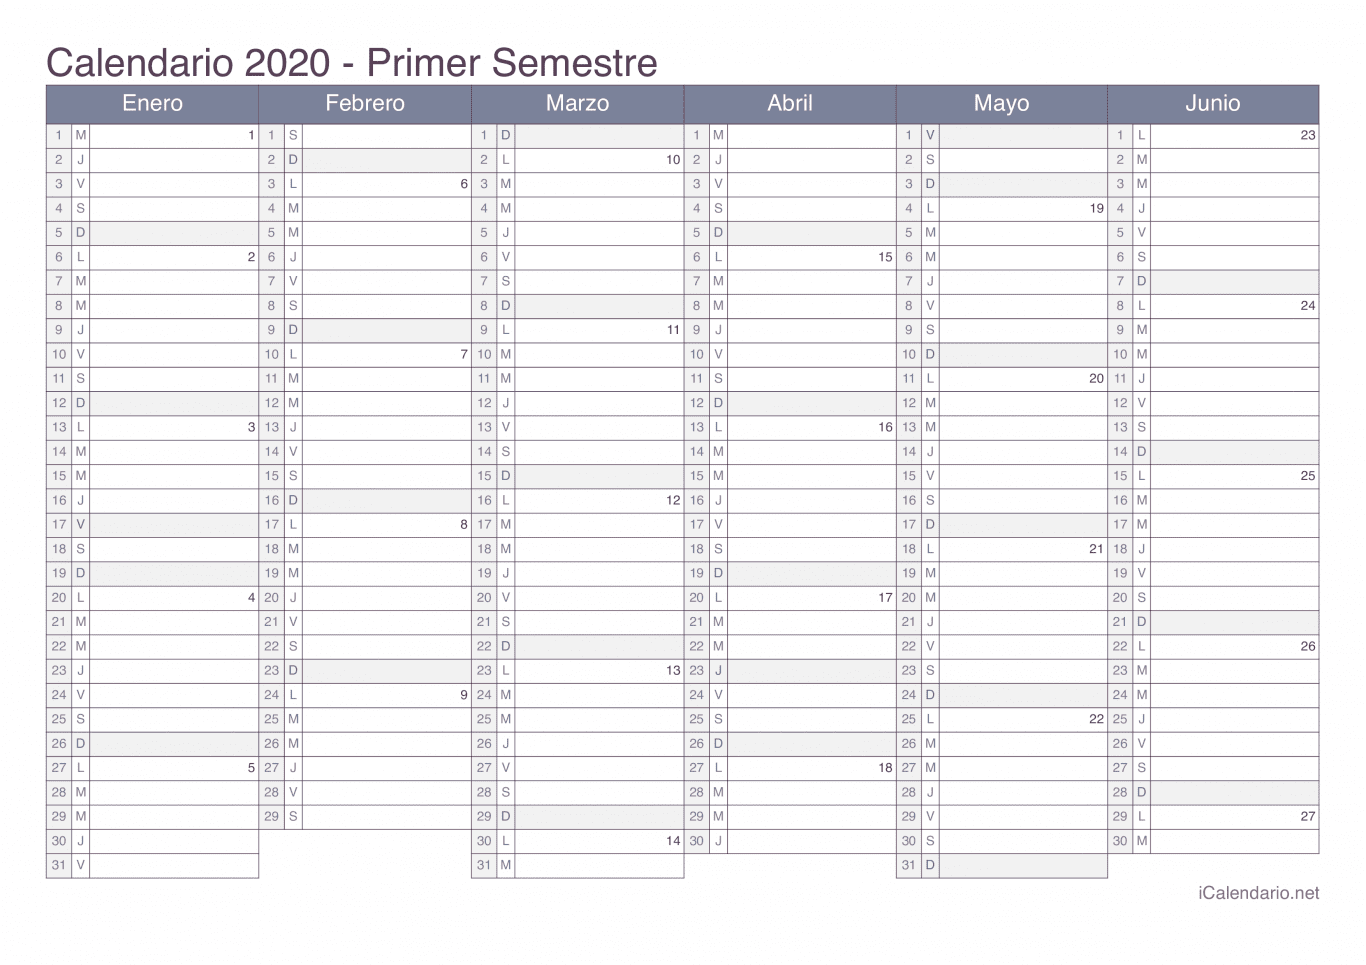 Calendario por semestre com números da semana 2020 - Office